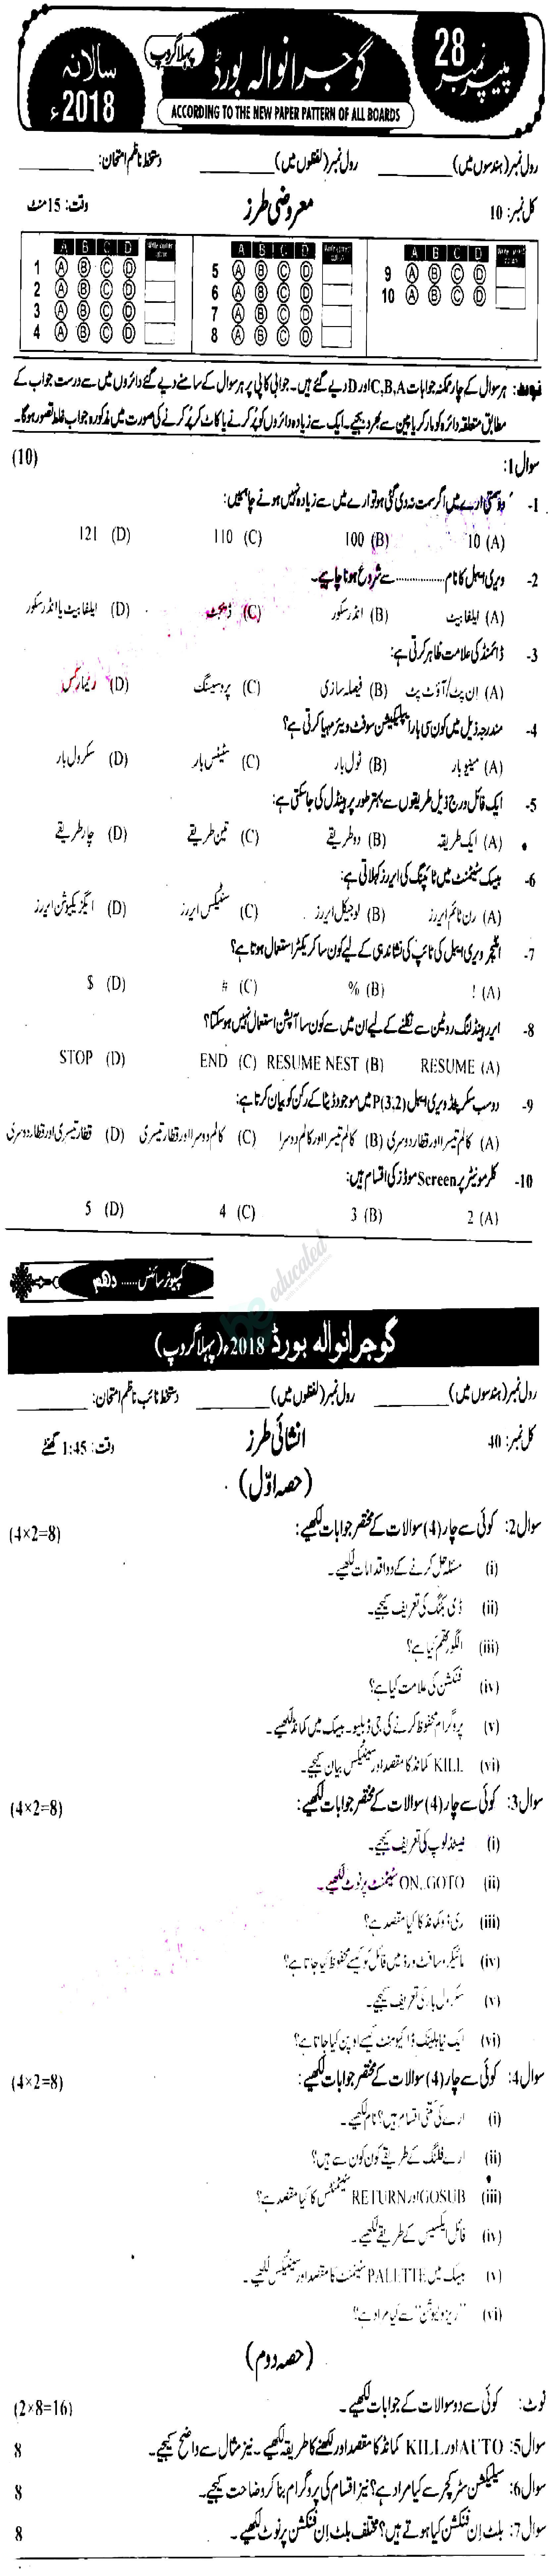 Computer Science 10th Urdu Medium Past Paper Group 2 BISE Gujranwala 2018